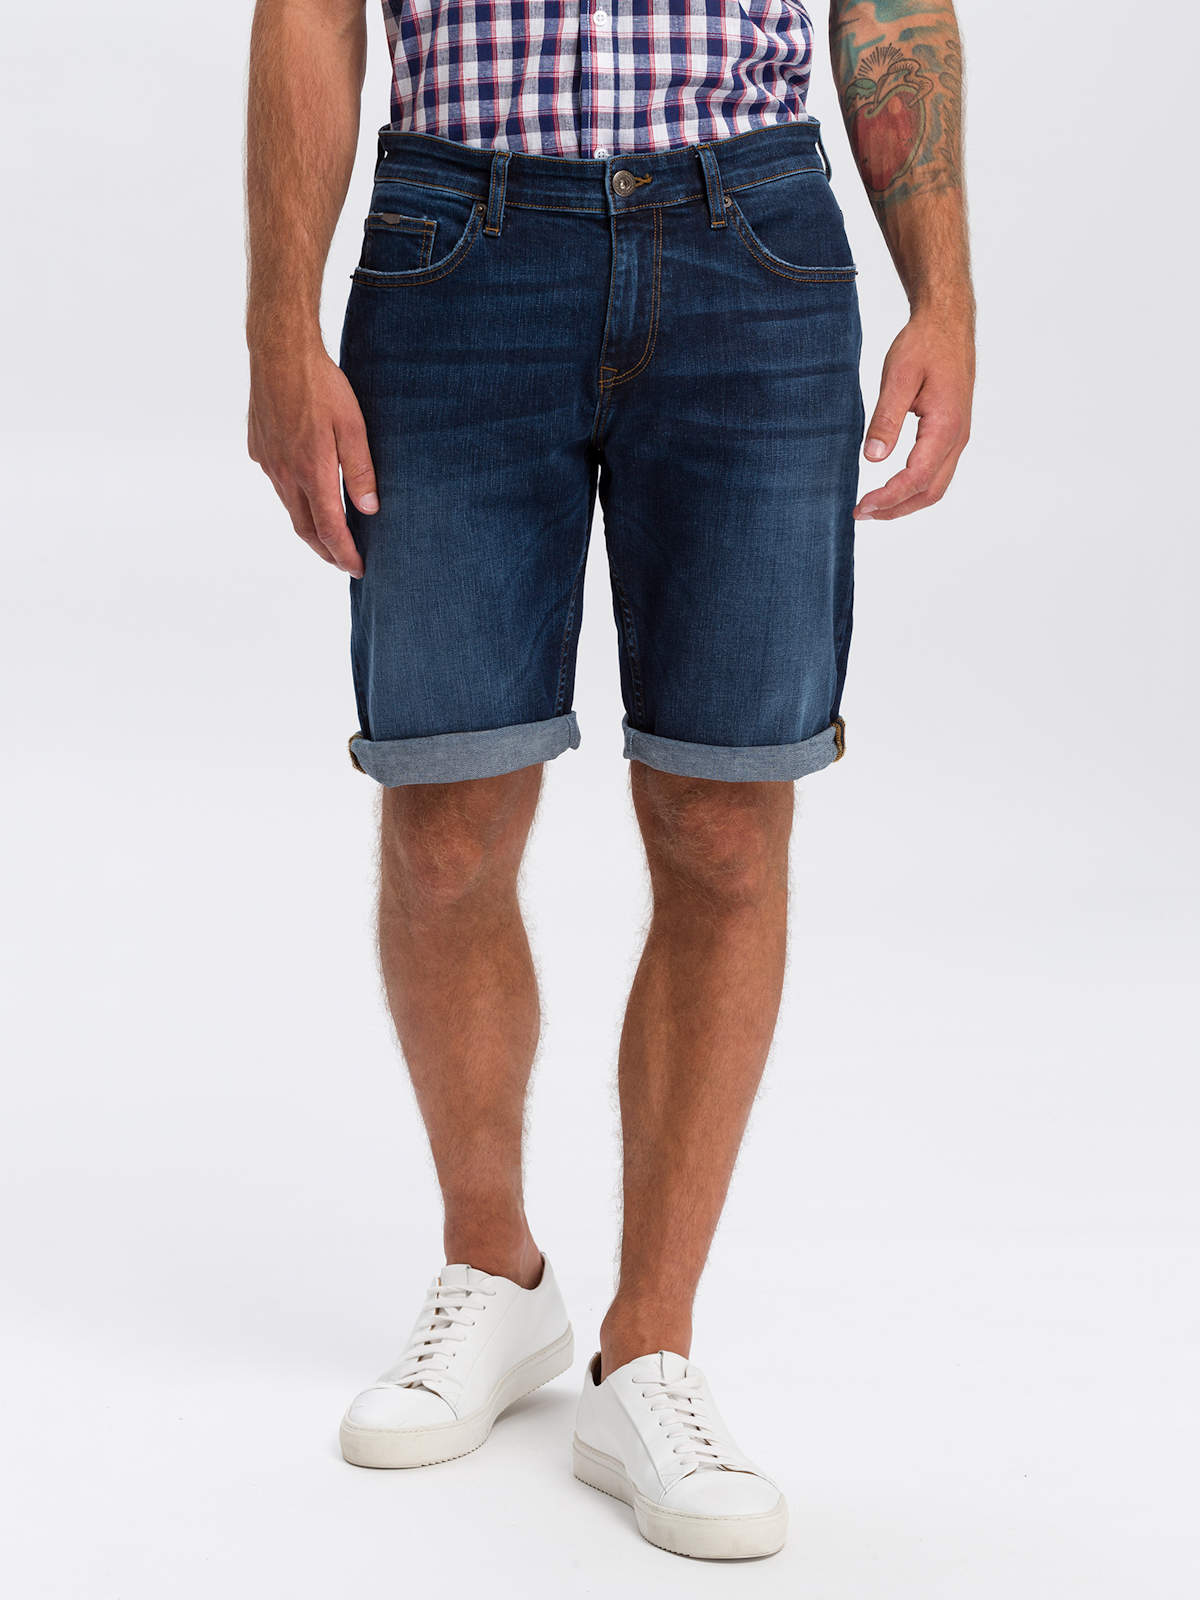 Джинсовые шорты мужские Cross Jeans A565-142 синие 36